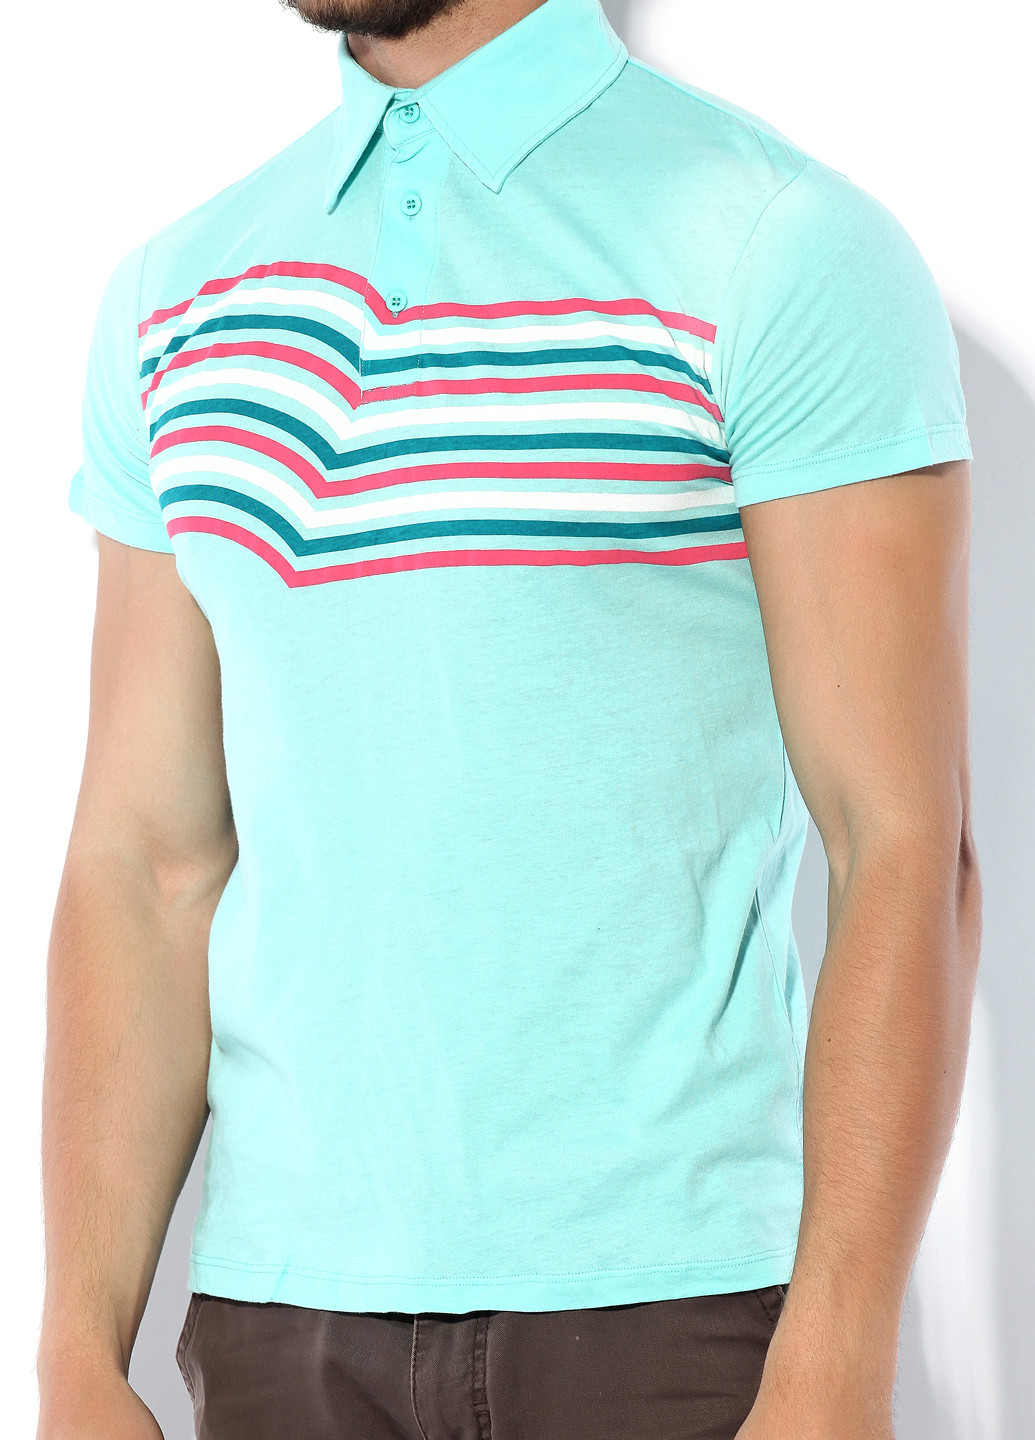 Цветная футболка-поло для мужчин Custo Barcelona в полоску